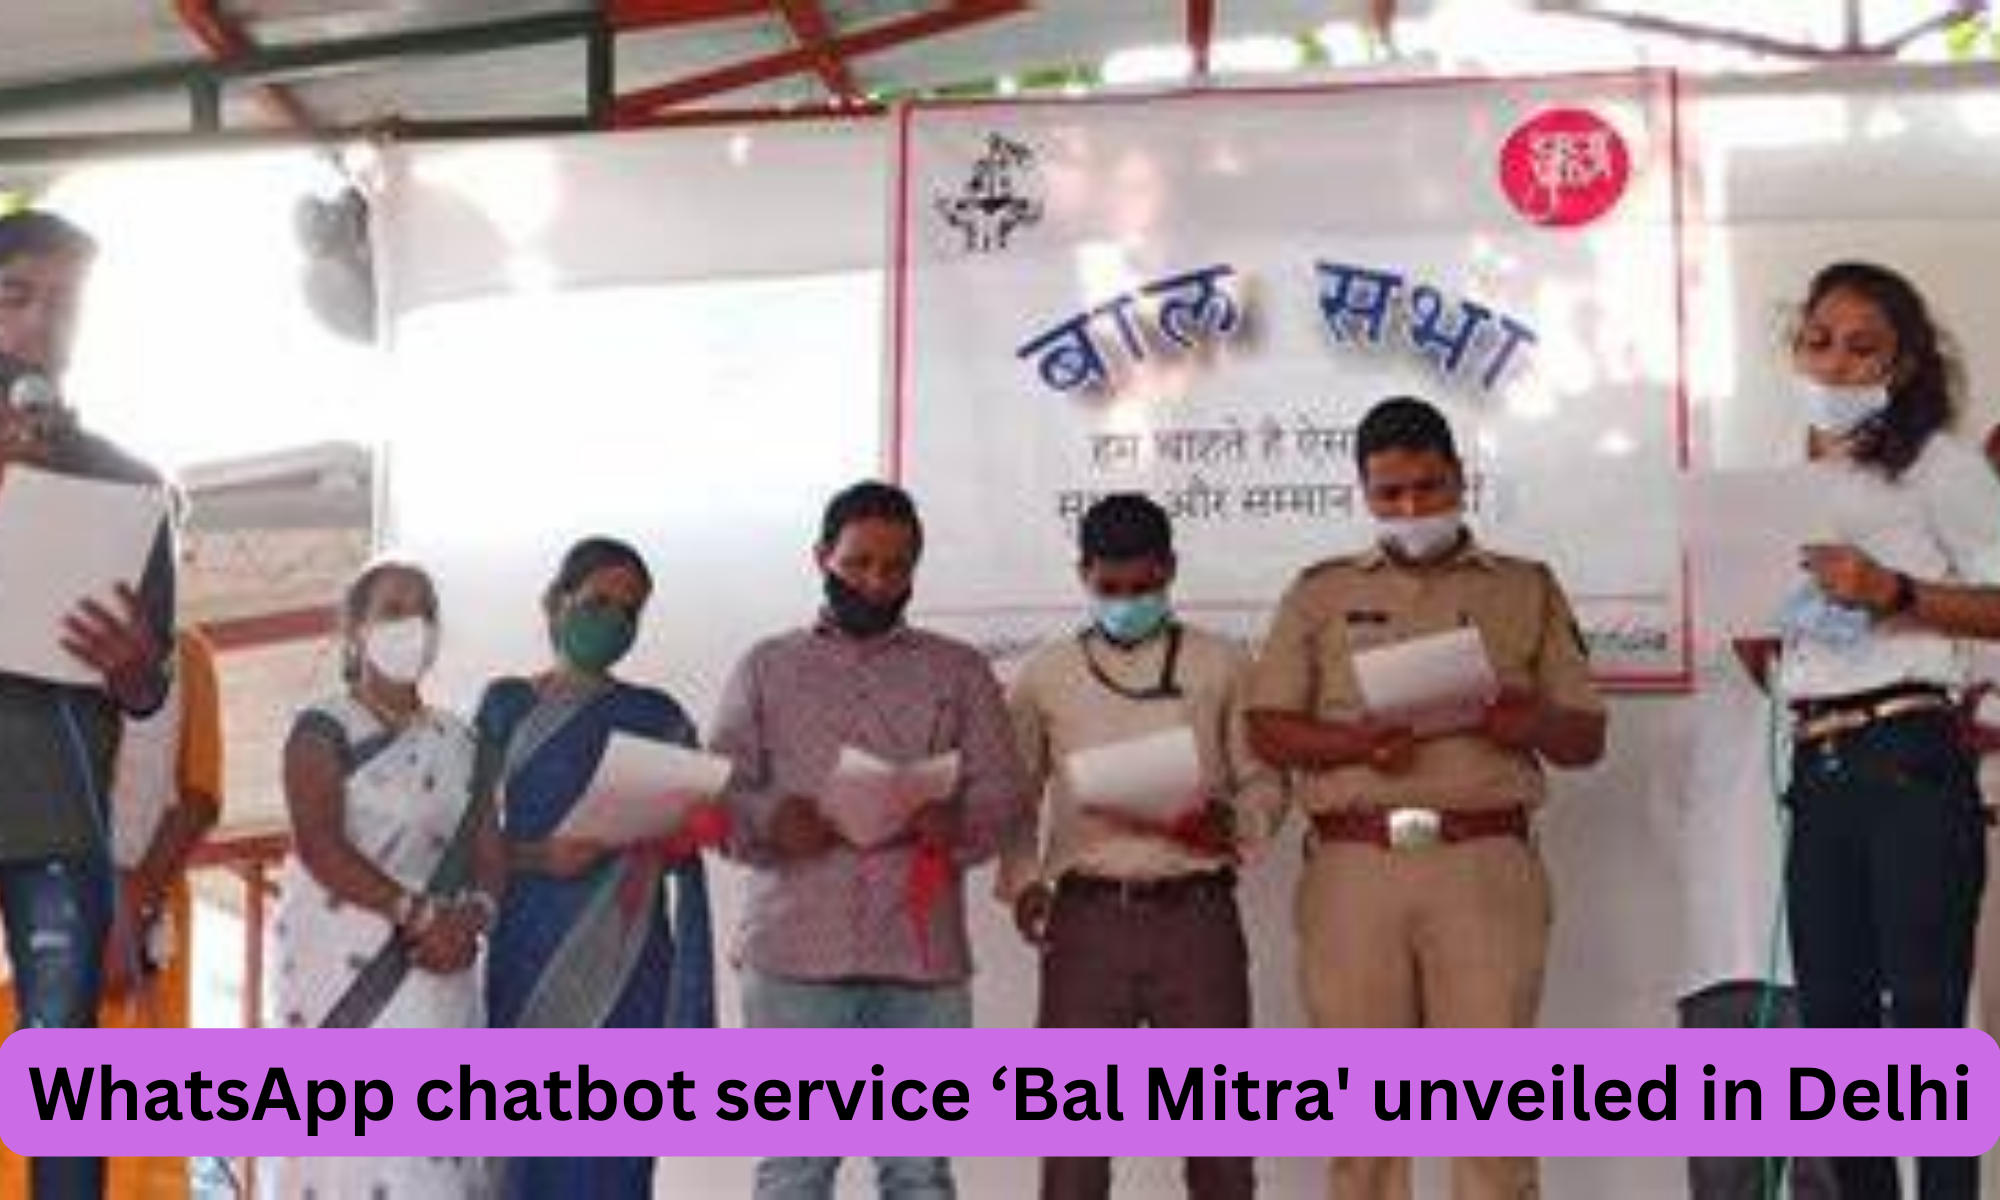 Delhi child rights body unveils WhatsApp chatbot service 'Bal Mitra'_50.1